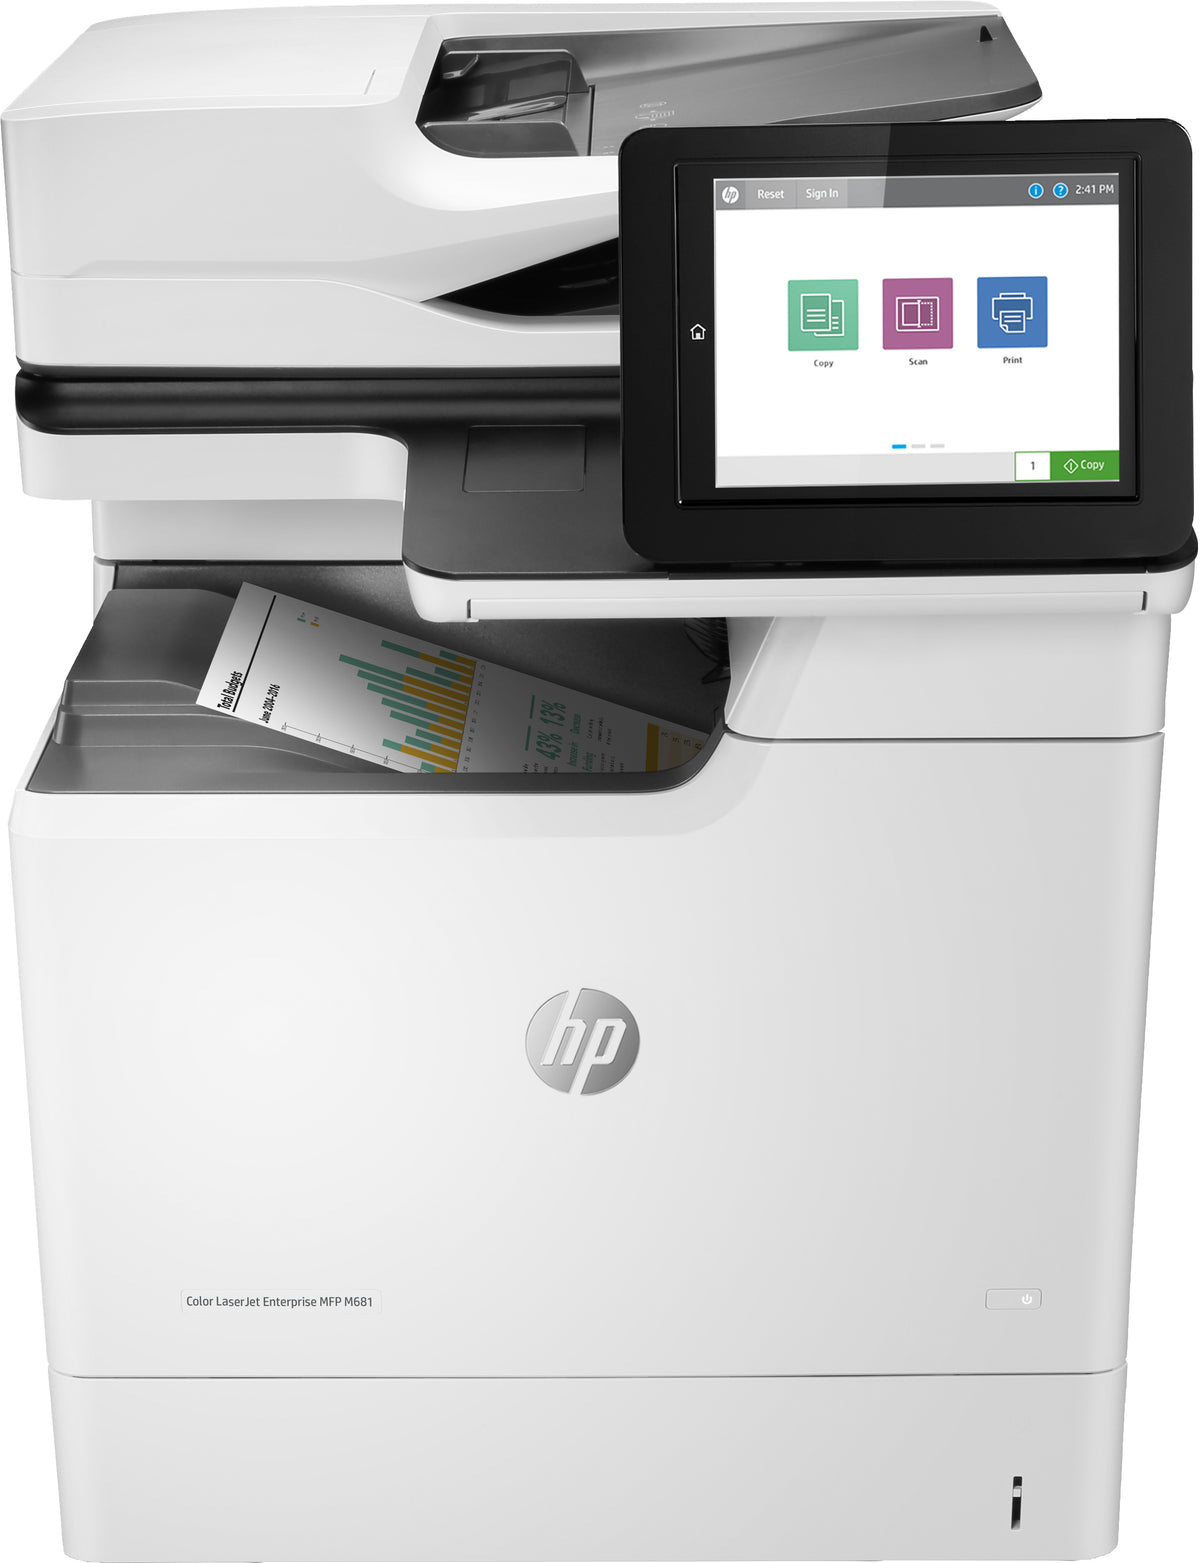 HP Color LaserJet Enterprise MFP M681dh - Impressora multi-funções - a cores - laser - 216 x 863 mm (original) - A4/Legal (media) - até 47 ppm (cópia) - até 47 ppm (impressão) - 650 folhas - USB 2.0, Gigabit LAN, USB 2.0 host